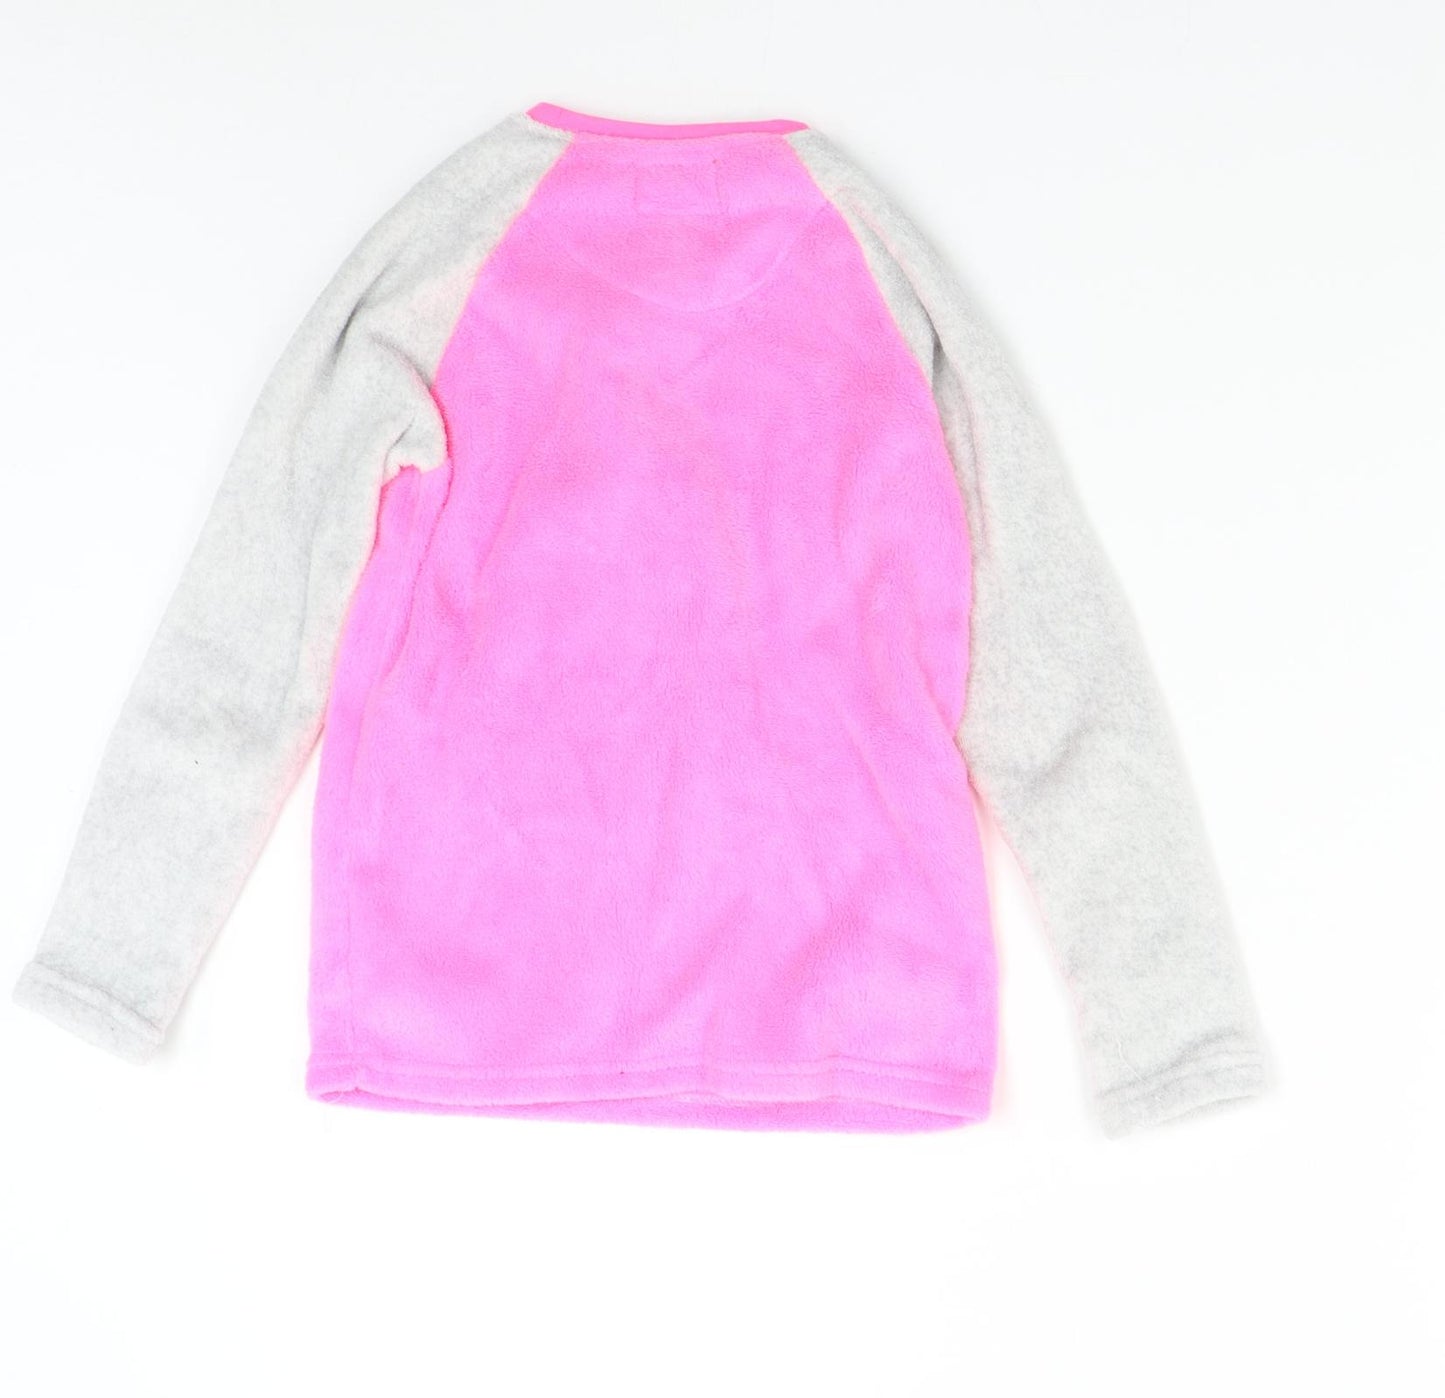 Primark Girls Pink Solid Fleece Top Pyjama Top Size 8-9 Years